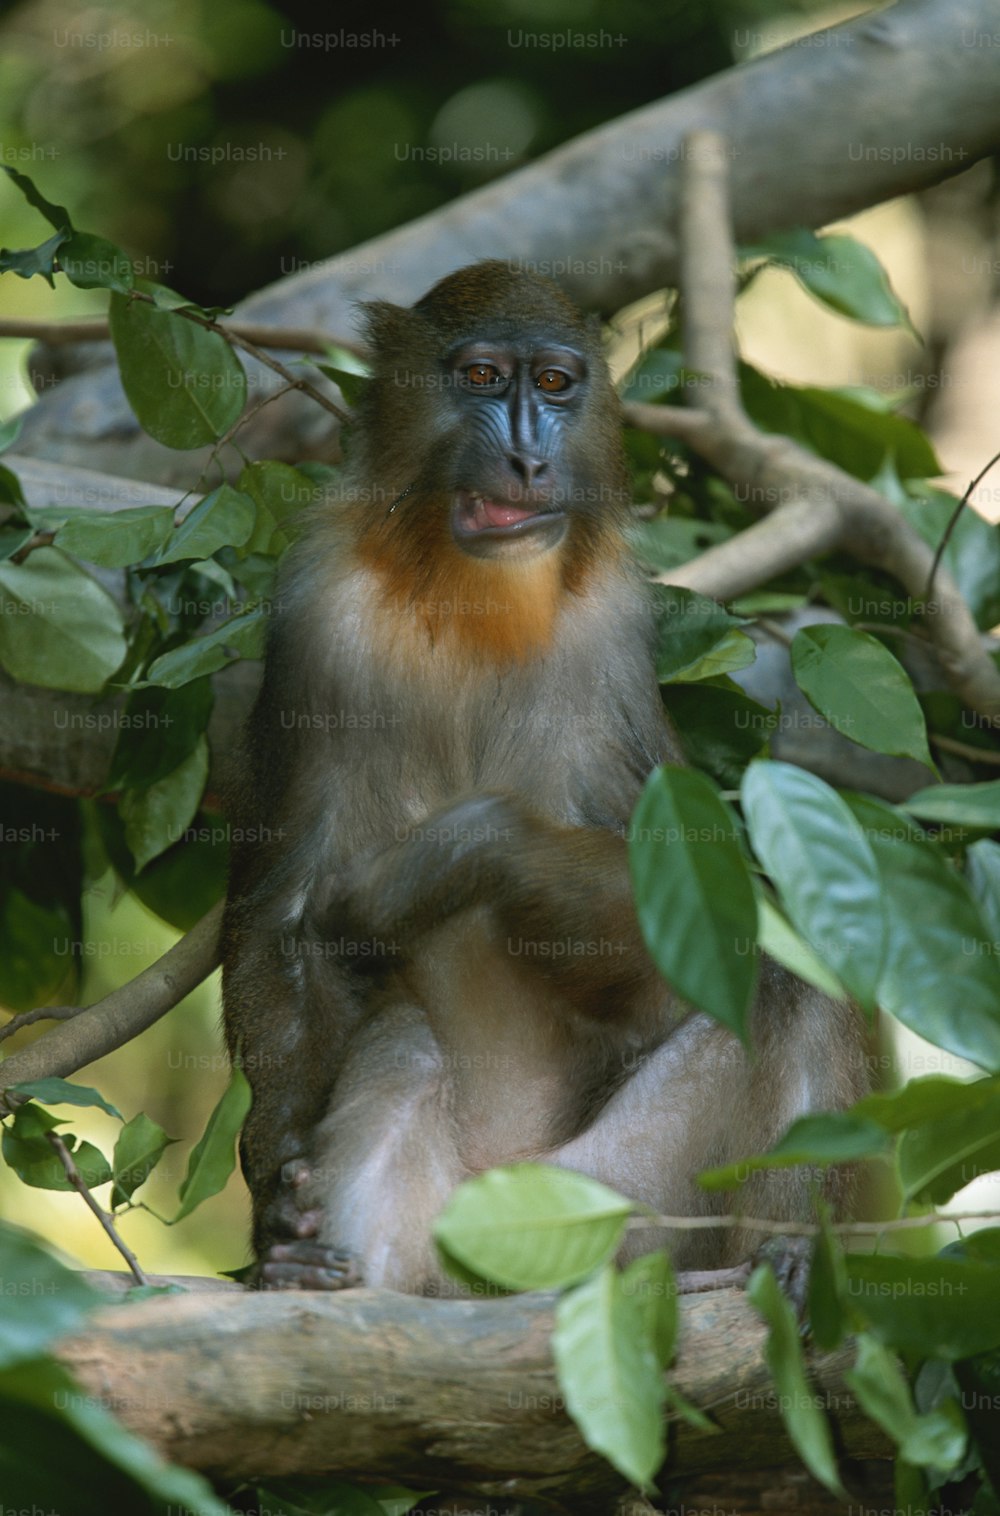 Ein Affe sitzt auf einem Ast